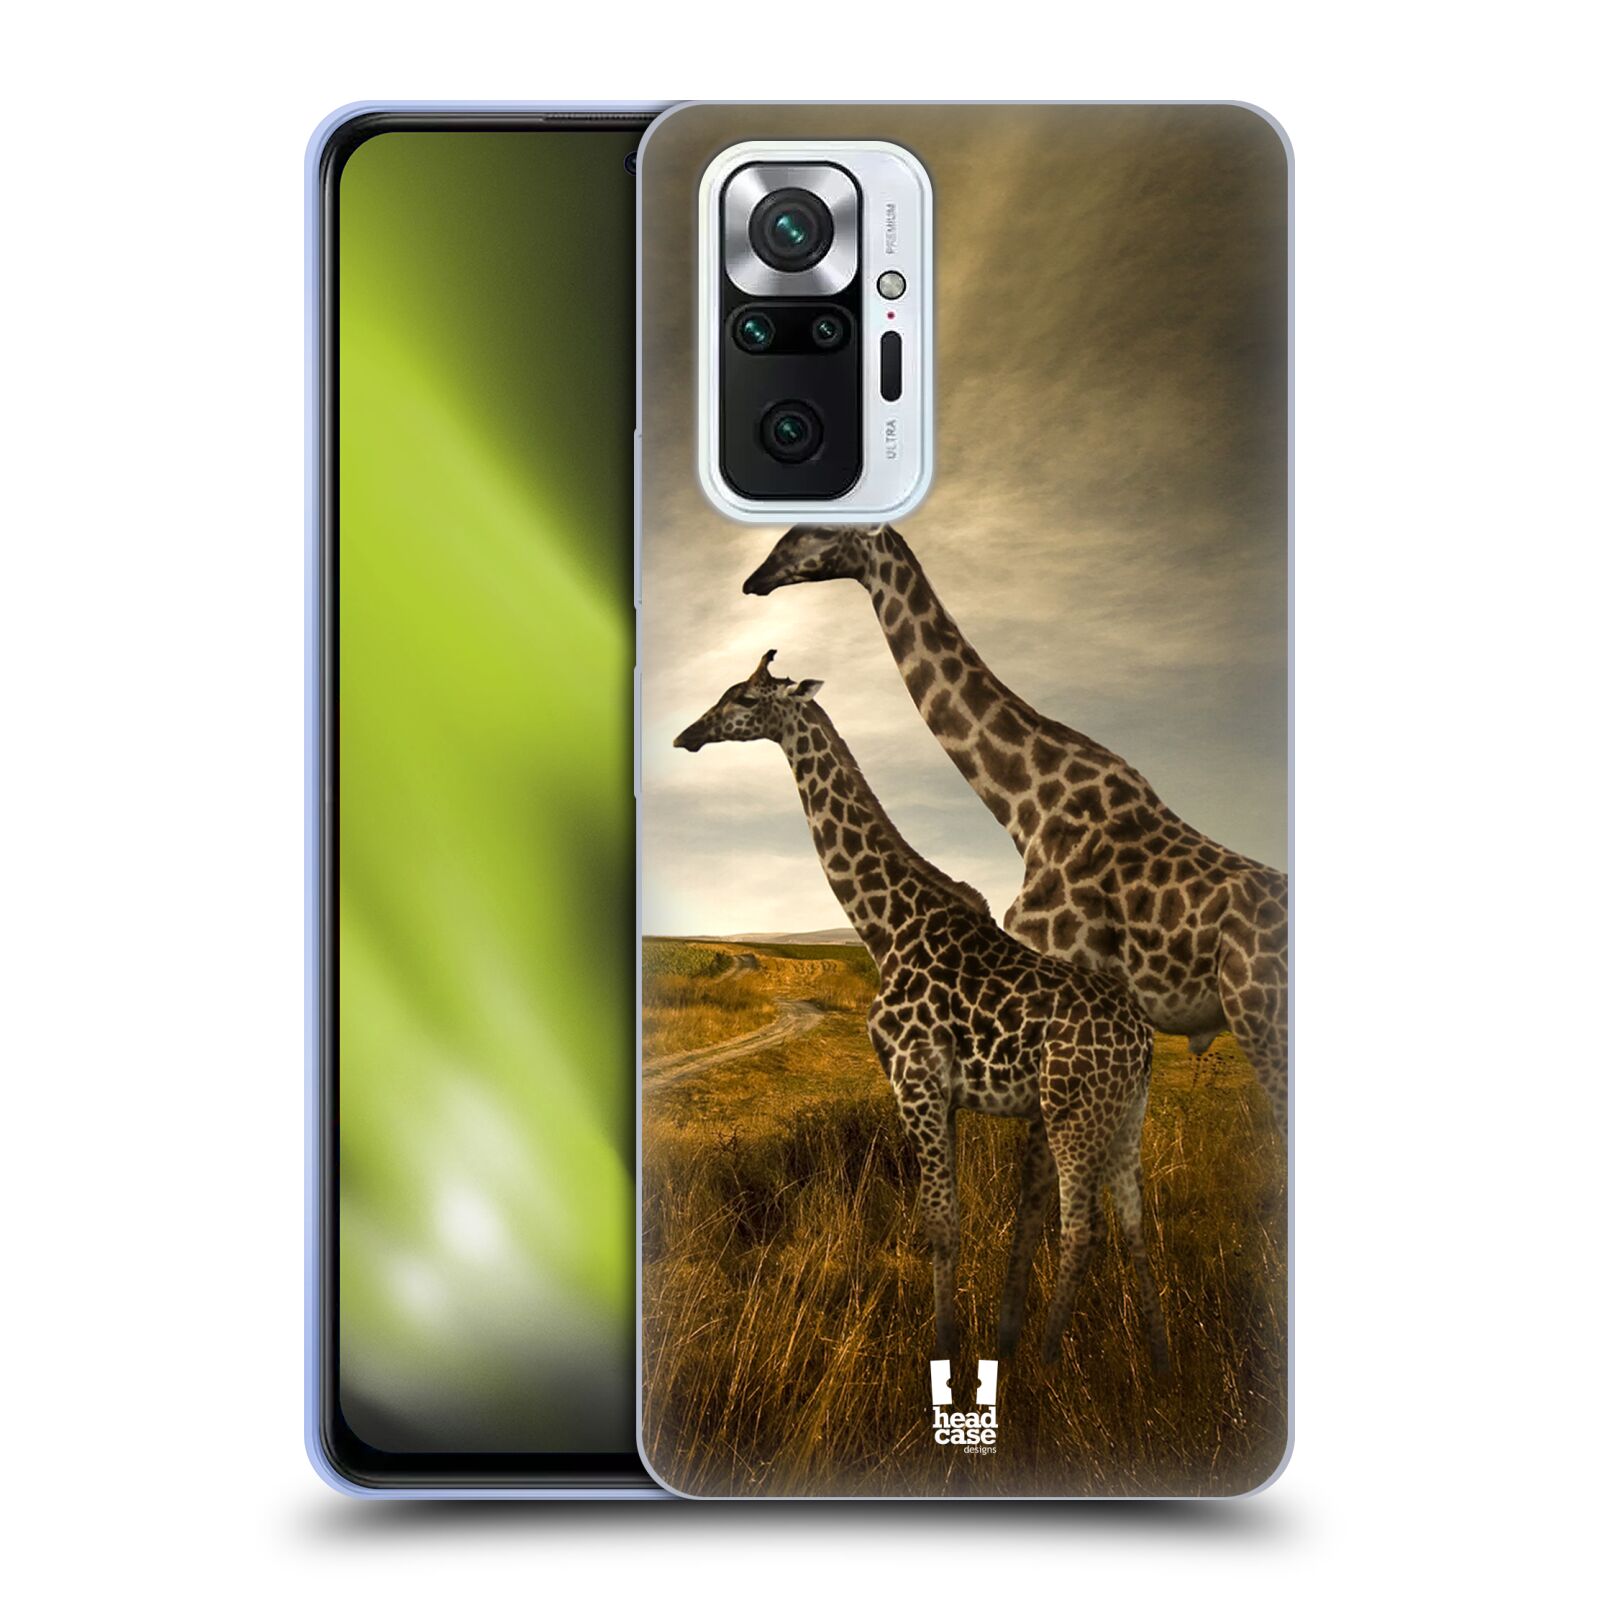 Zadní obal pro mobil Xiaomi Redmi Note 10 PRO - HEAD CASE - Svět zvířat žirafy